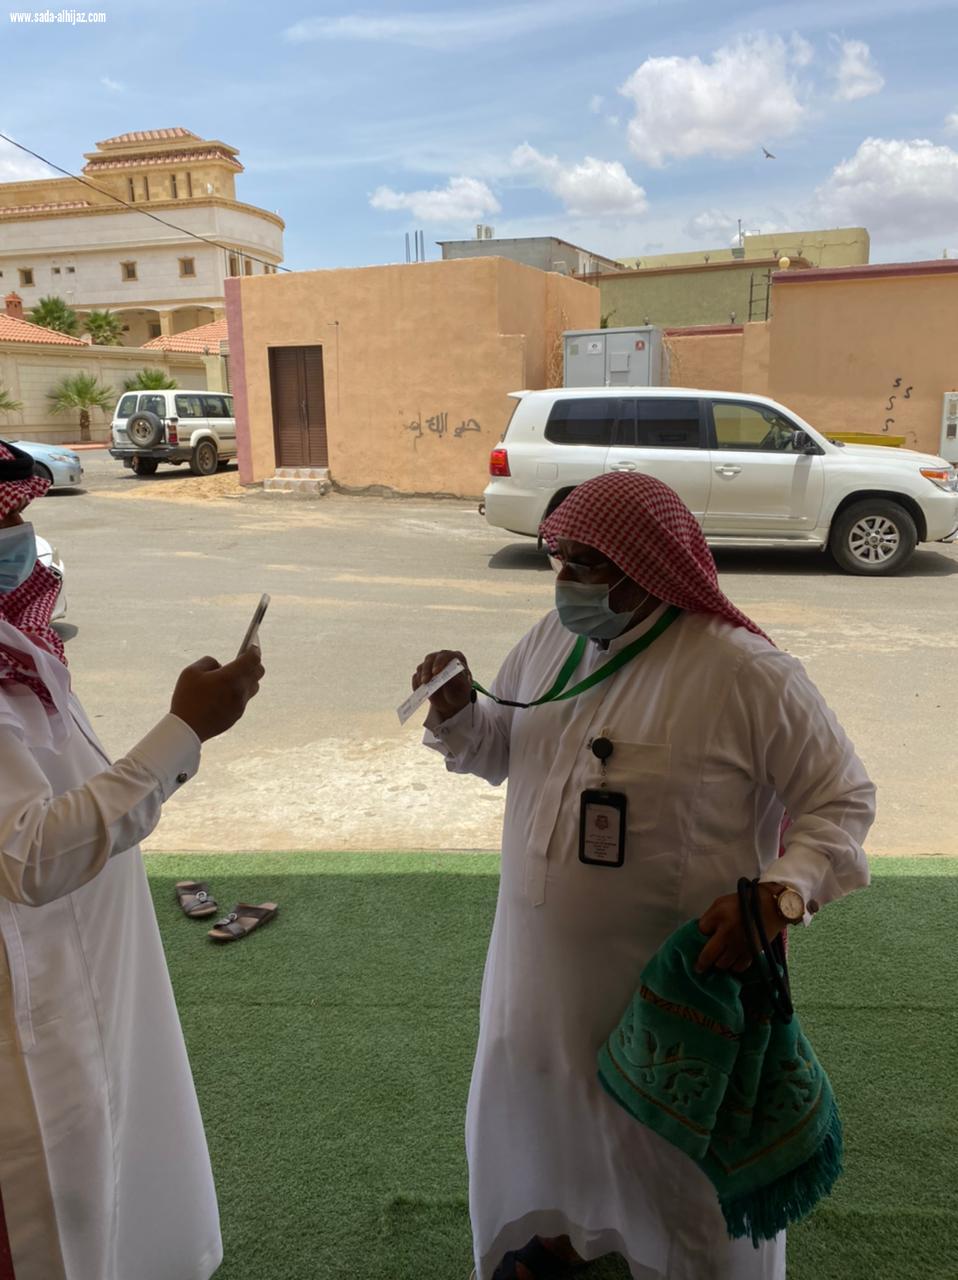 مواصلة تطبيق الإجراءات الاحترازية من قبل مستشفى صامطة وإدارة المساجد في المحافظة